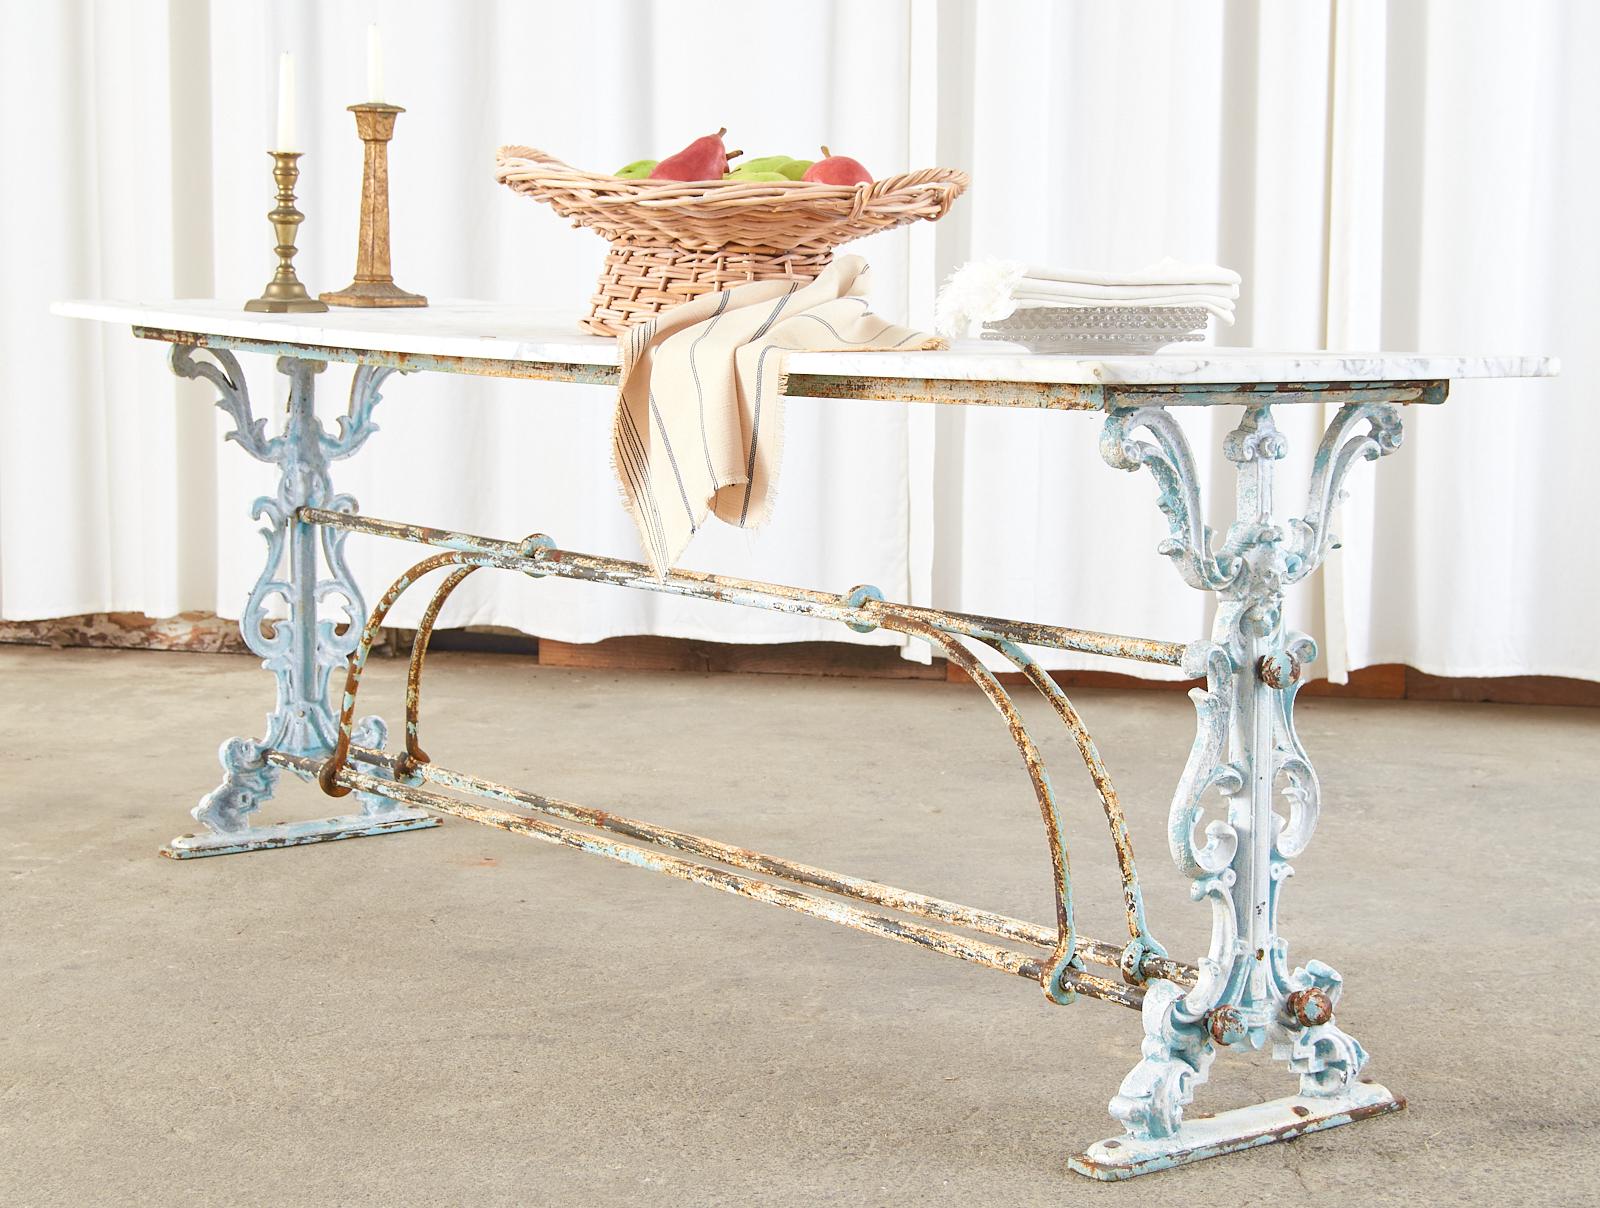 Fantastischer französischer Jugendstil-Patisserie-Tisch mit einer verwitterten, glatten Platte aus Carrara-Marmor. Der Tisch aus dem späten 19. Jahrhundert/frühen 20. Jahrhundert ist handgefertigt und hat ein Gestell im Stil eines Bocks. Die